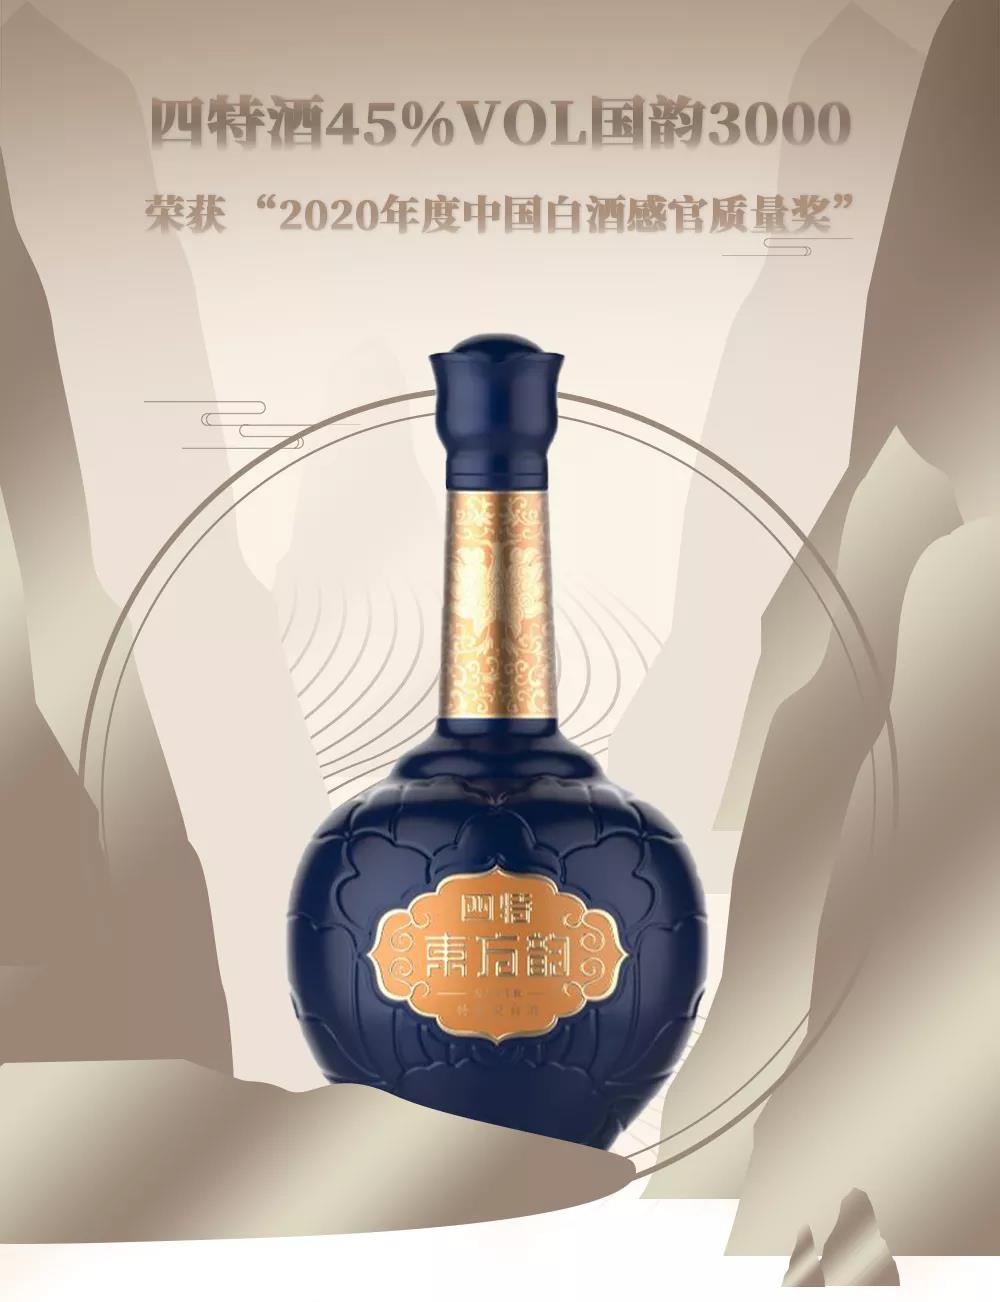 四特再获奖，“2020年度中国白酒感官质量奖”花落国韵3000